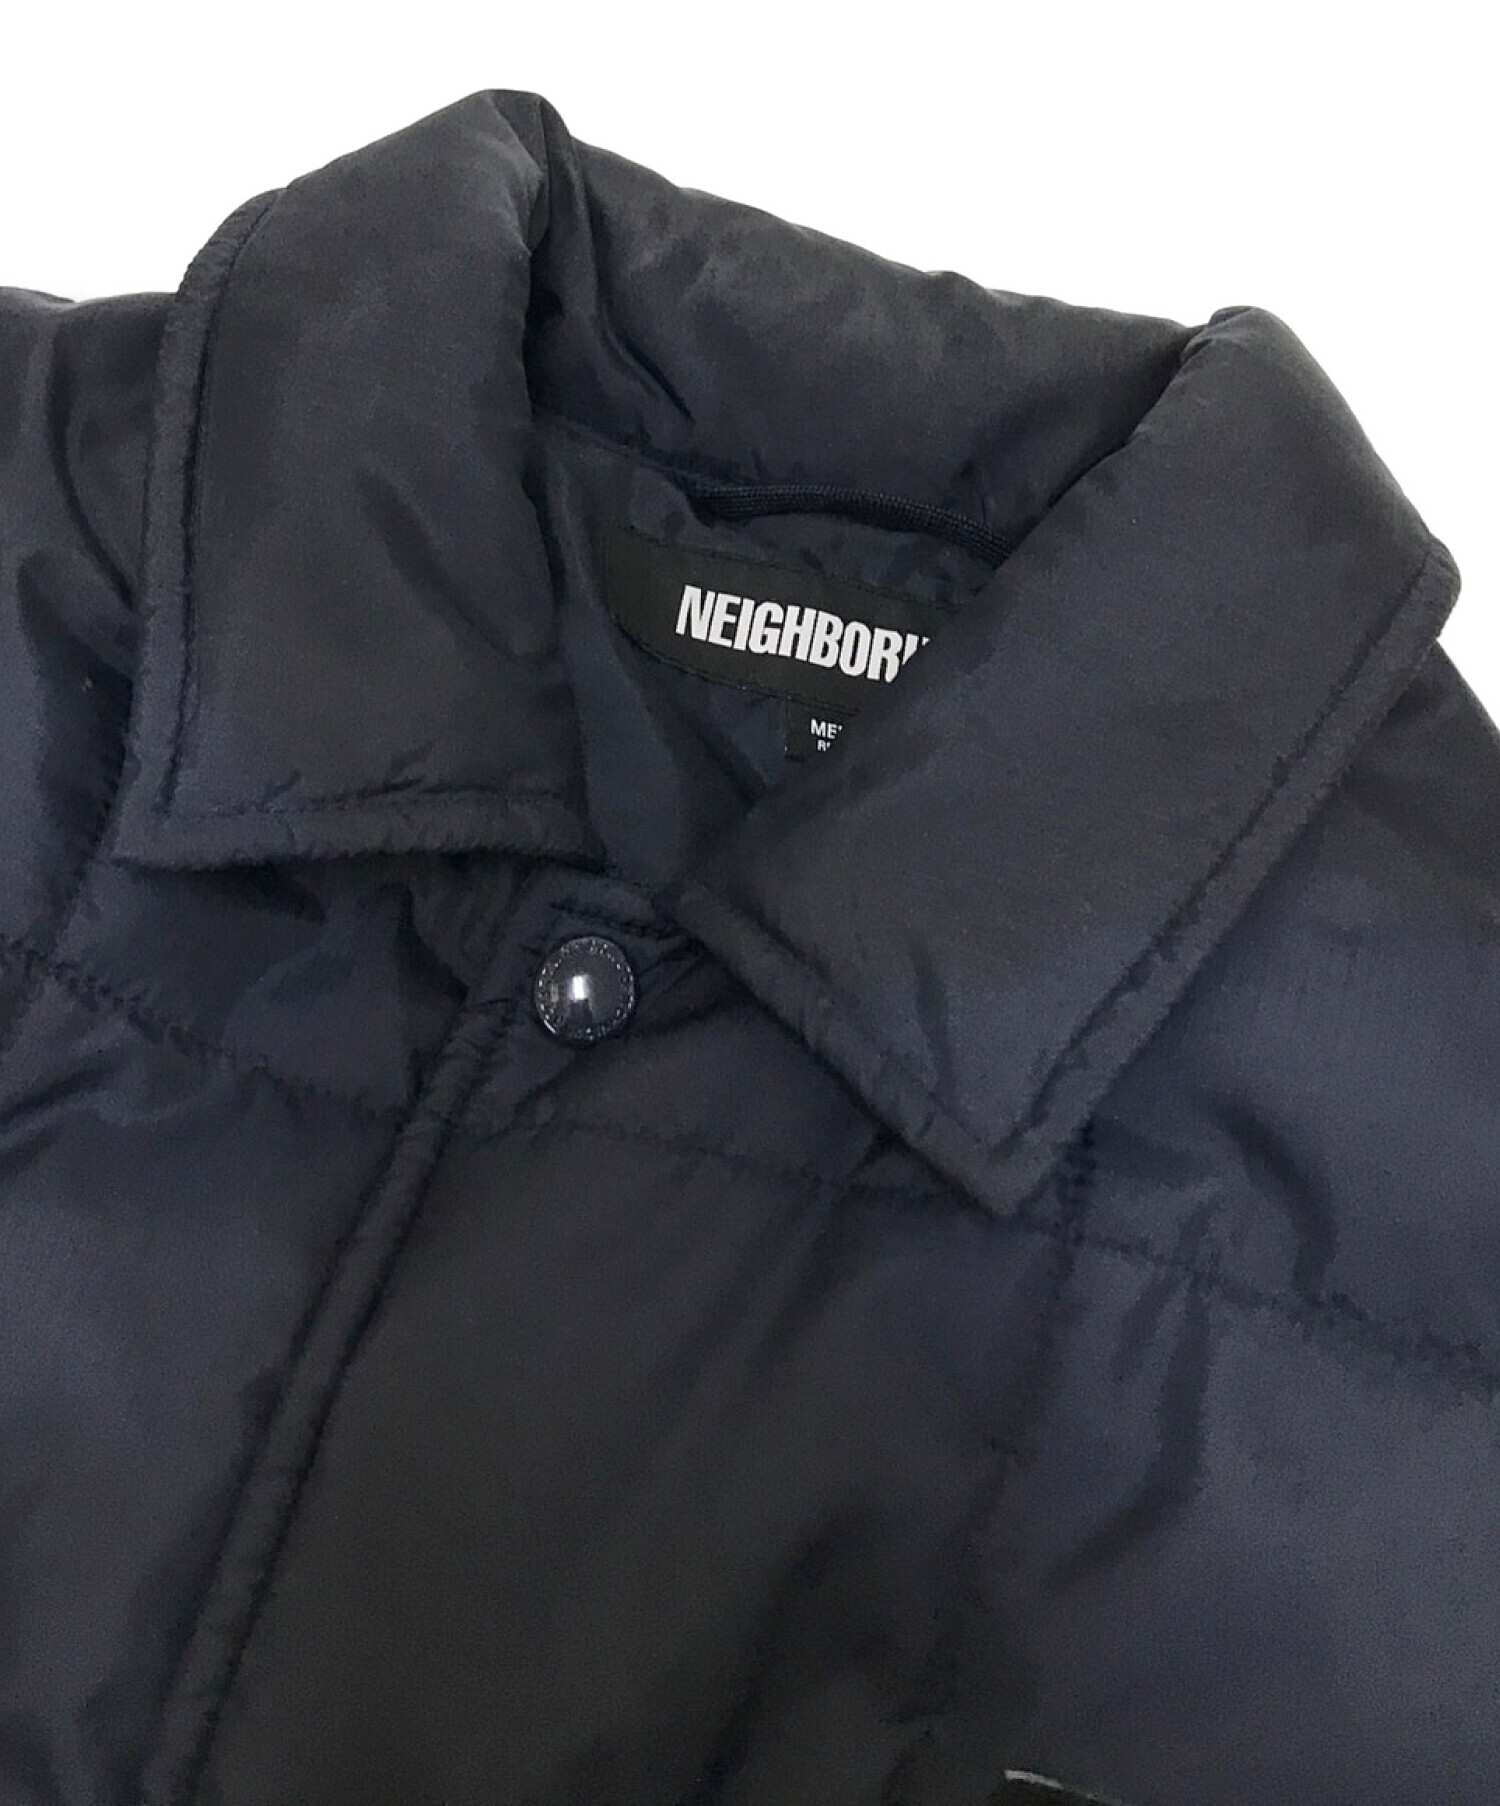 NEIGHBORHOOD Puff Insulated Shirt Jacketメンズ